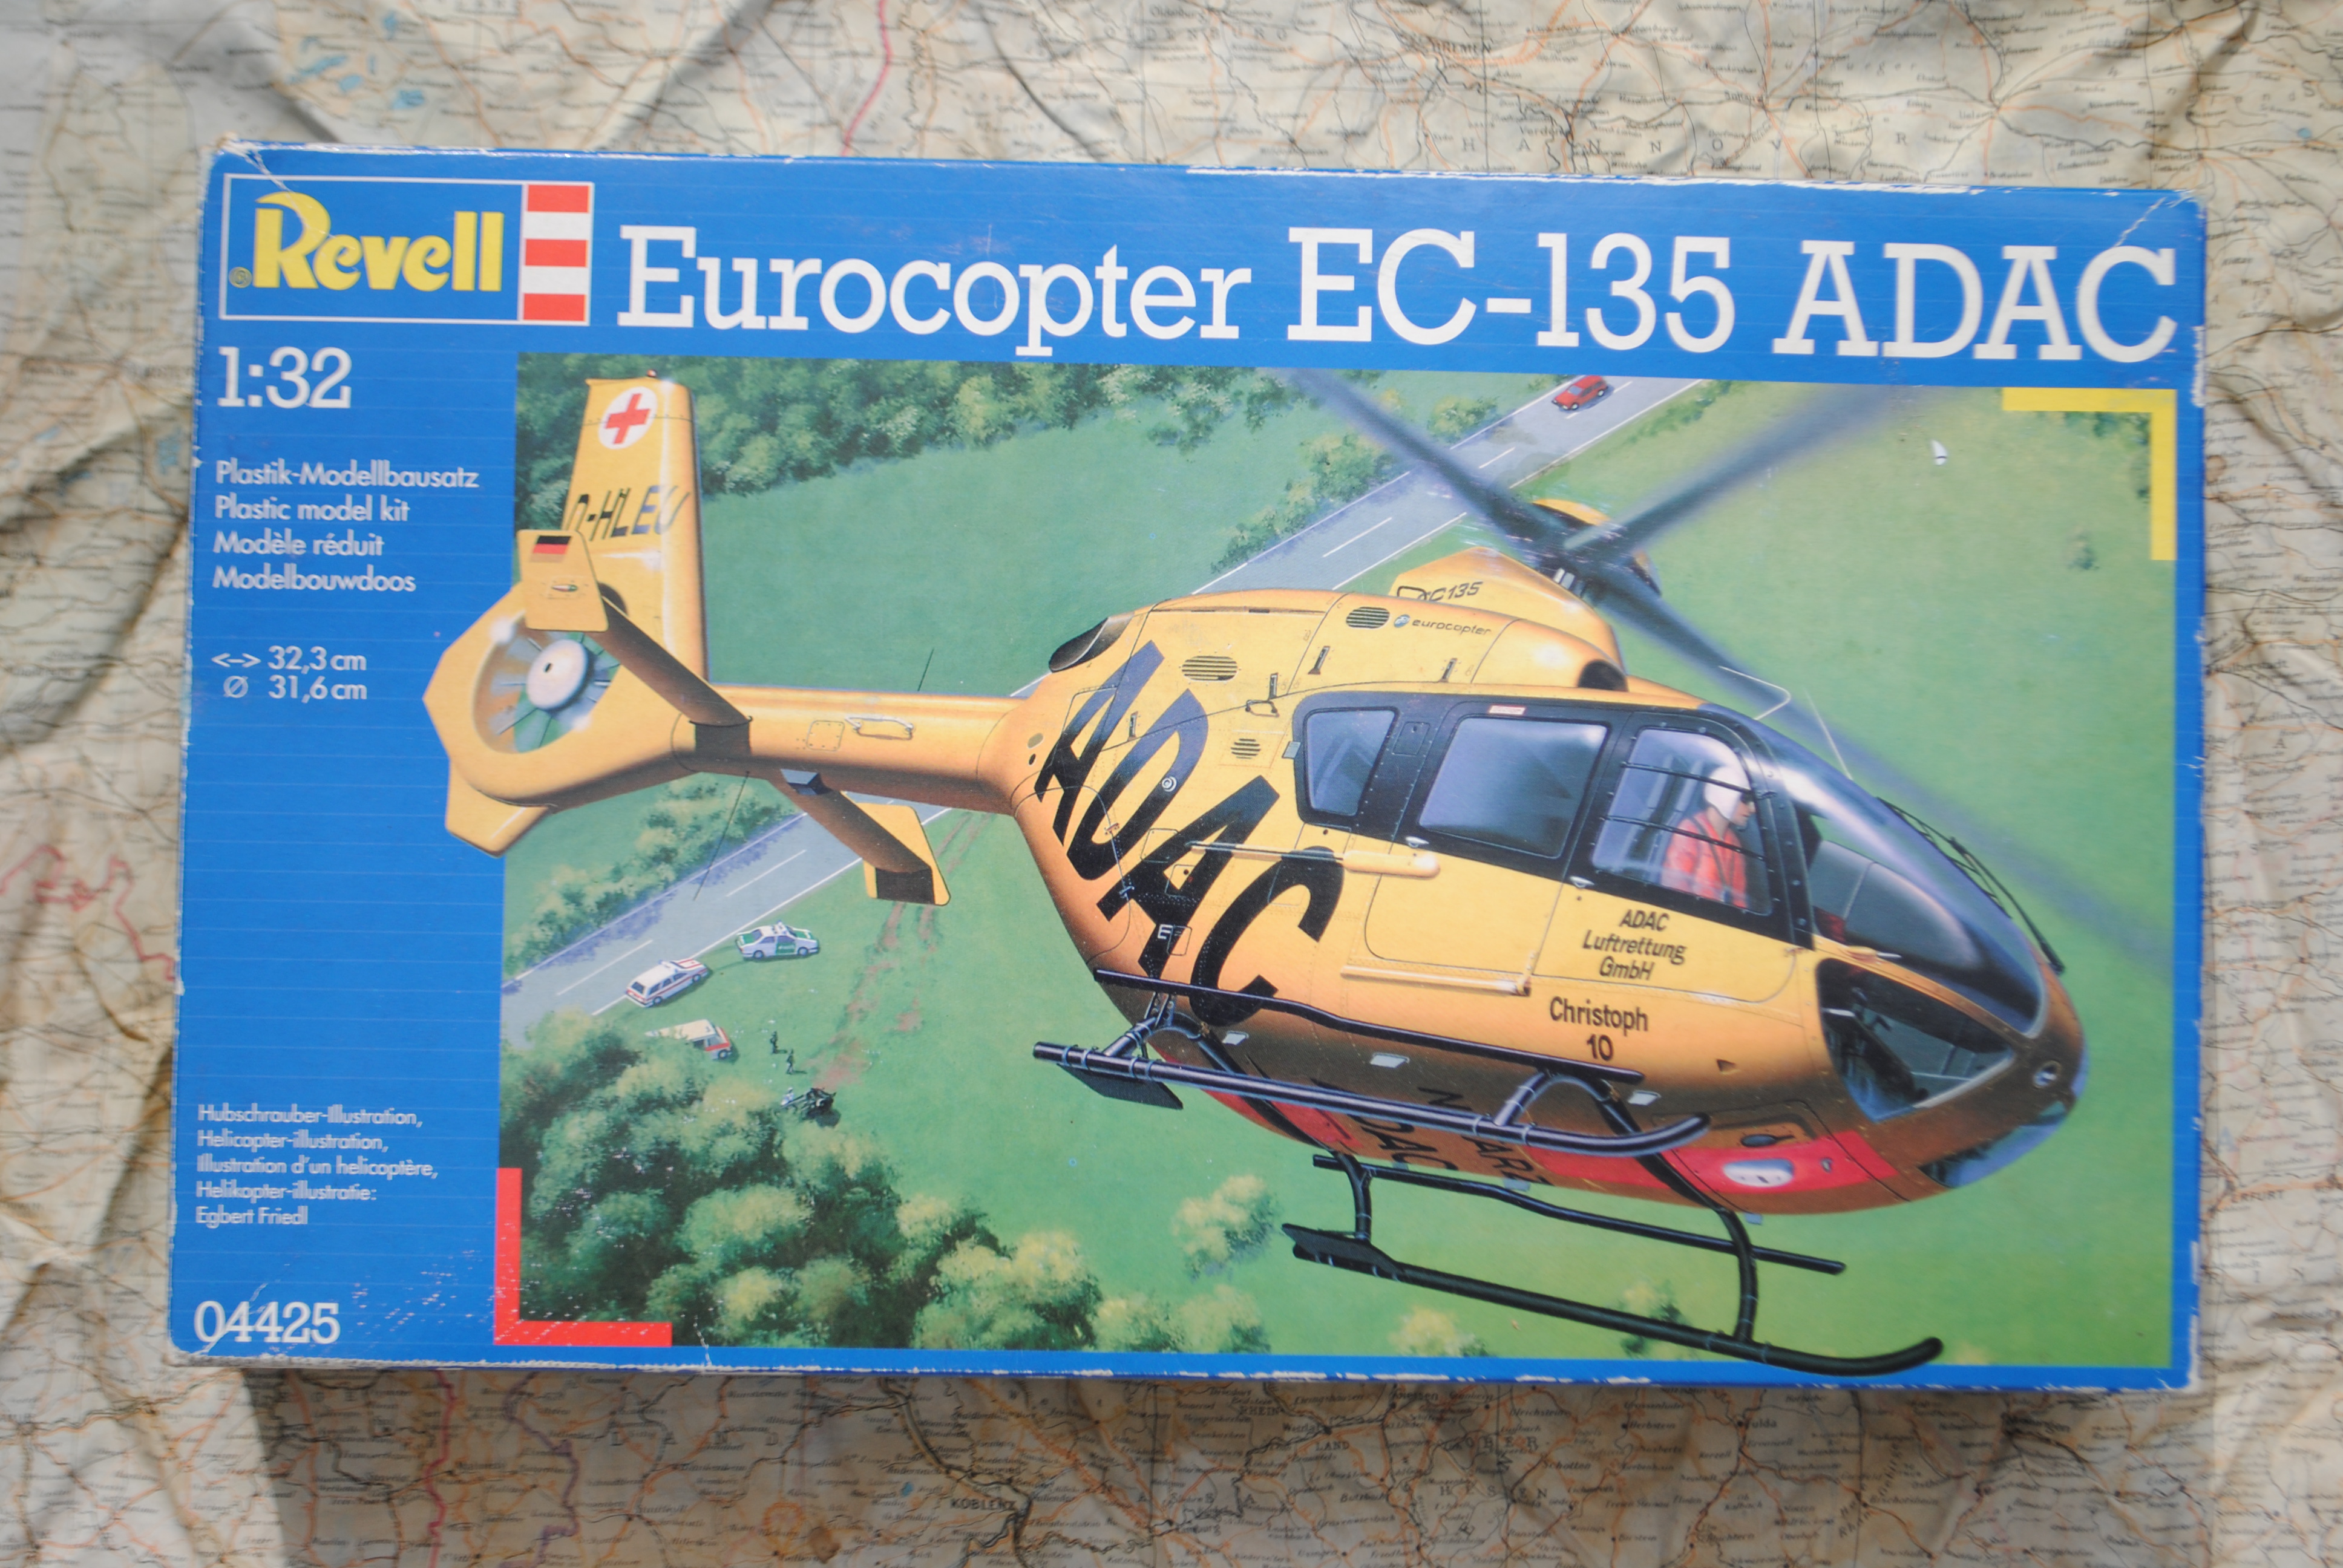 Revell 04425 Eurocopter EC-135 ADAC